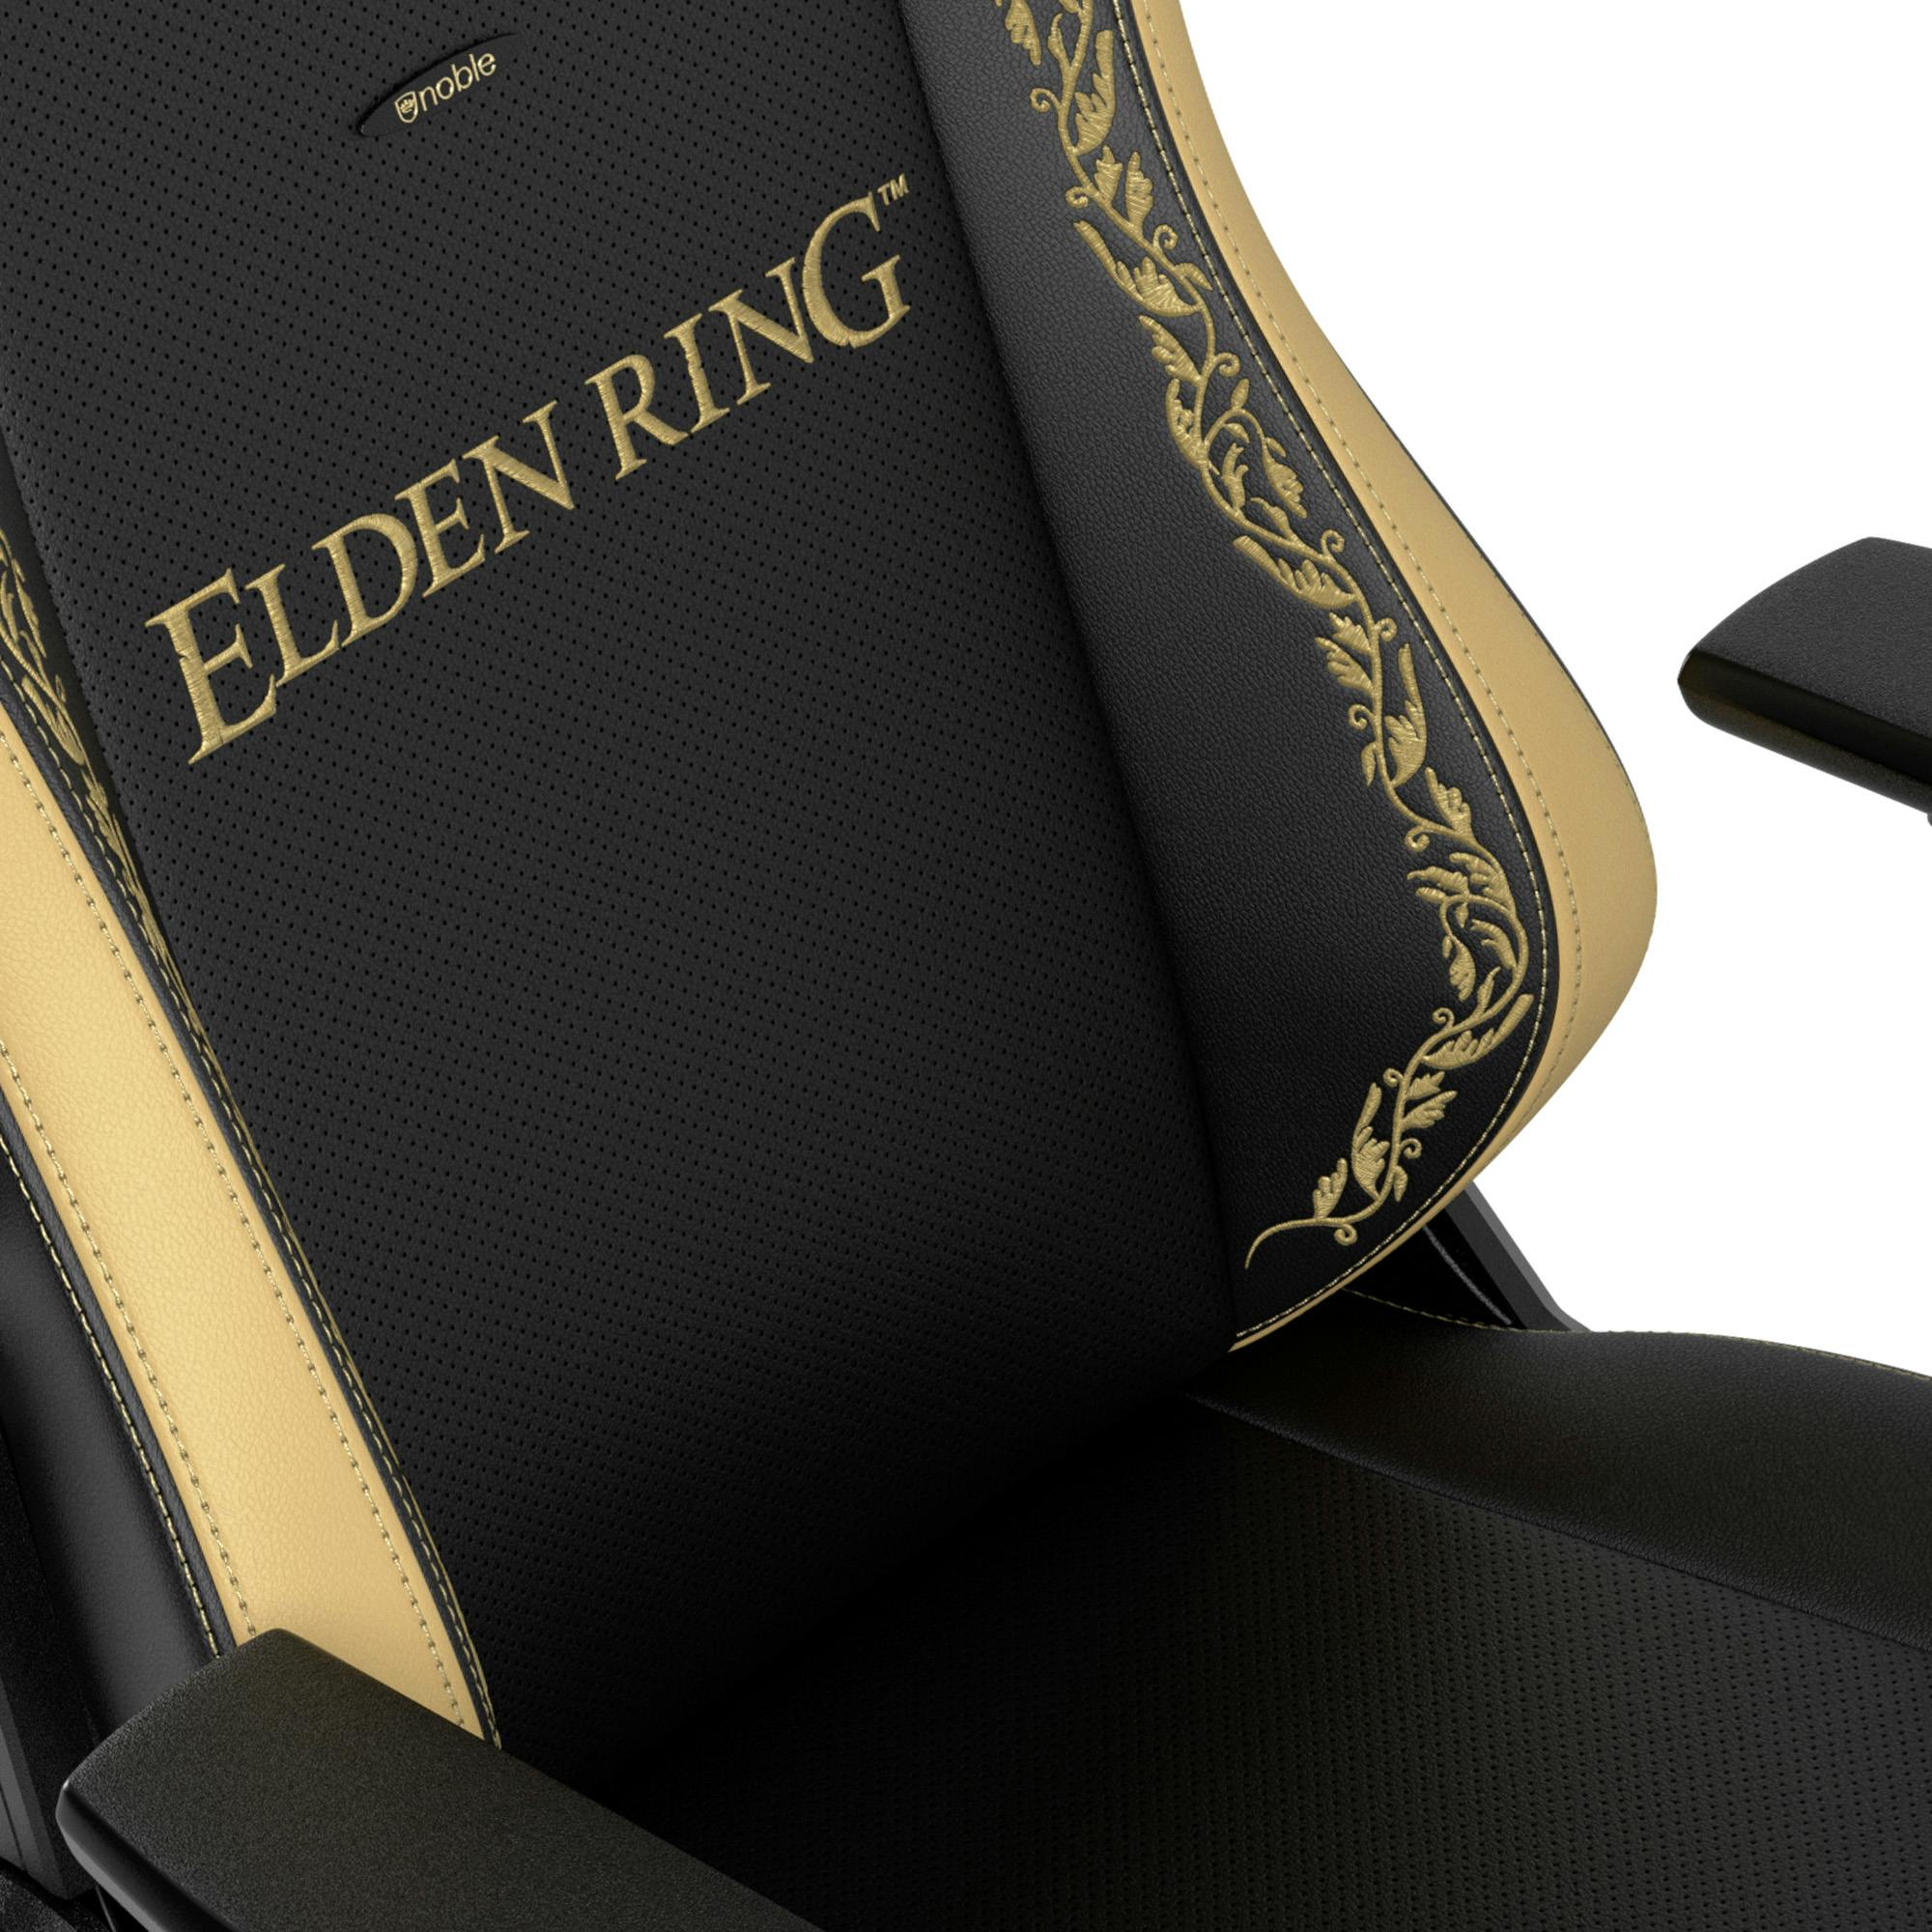 noblechairs - HERO Elden Ring Edition